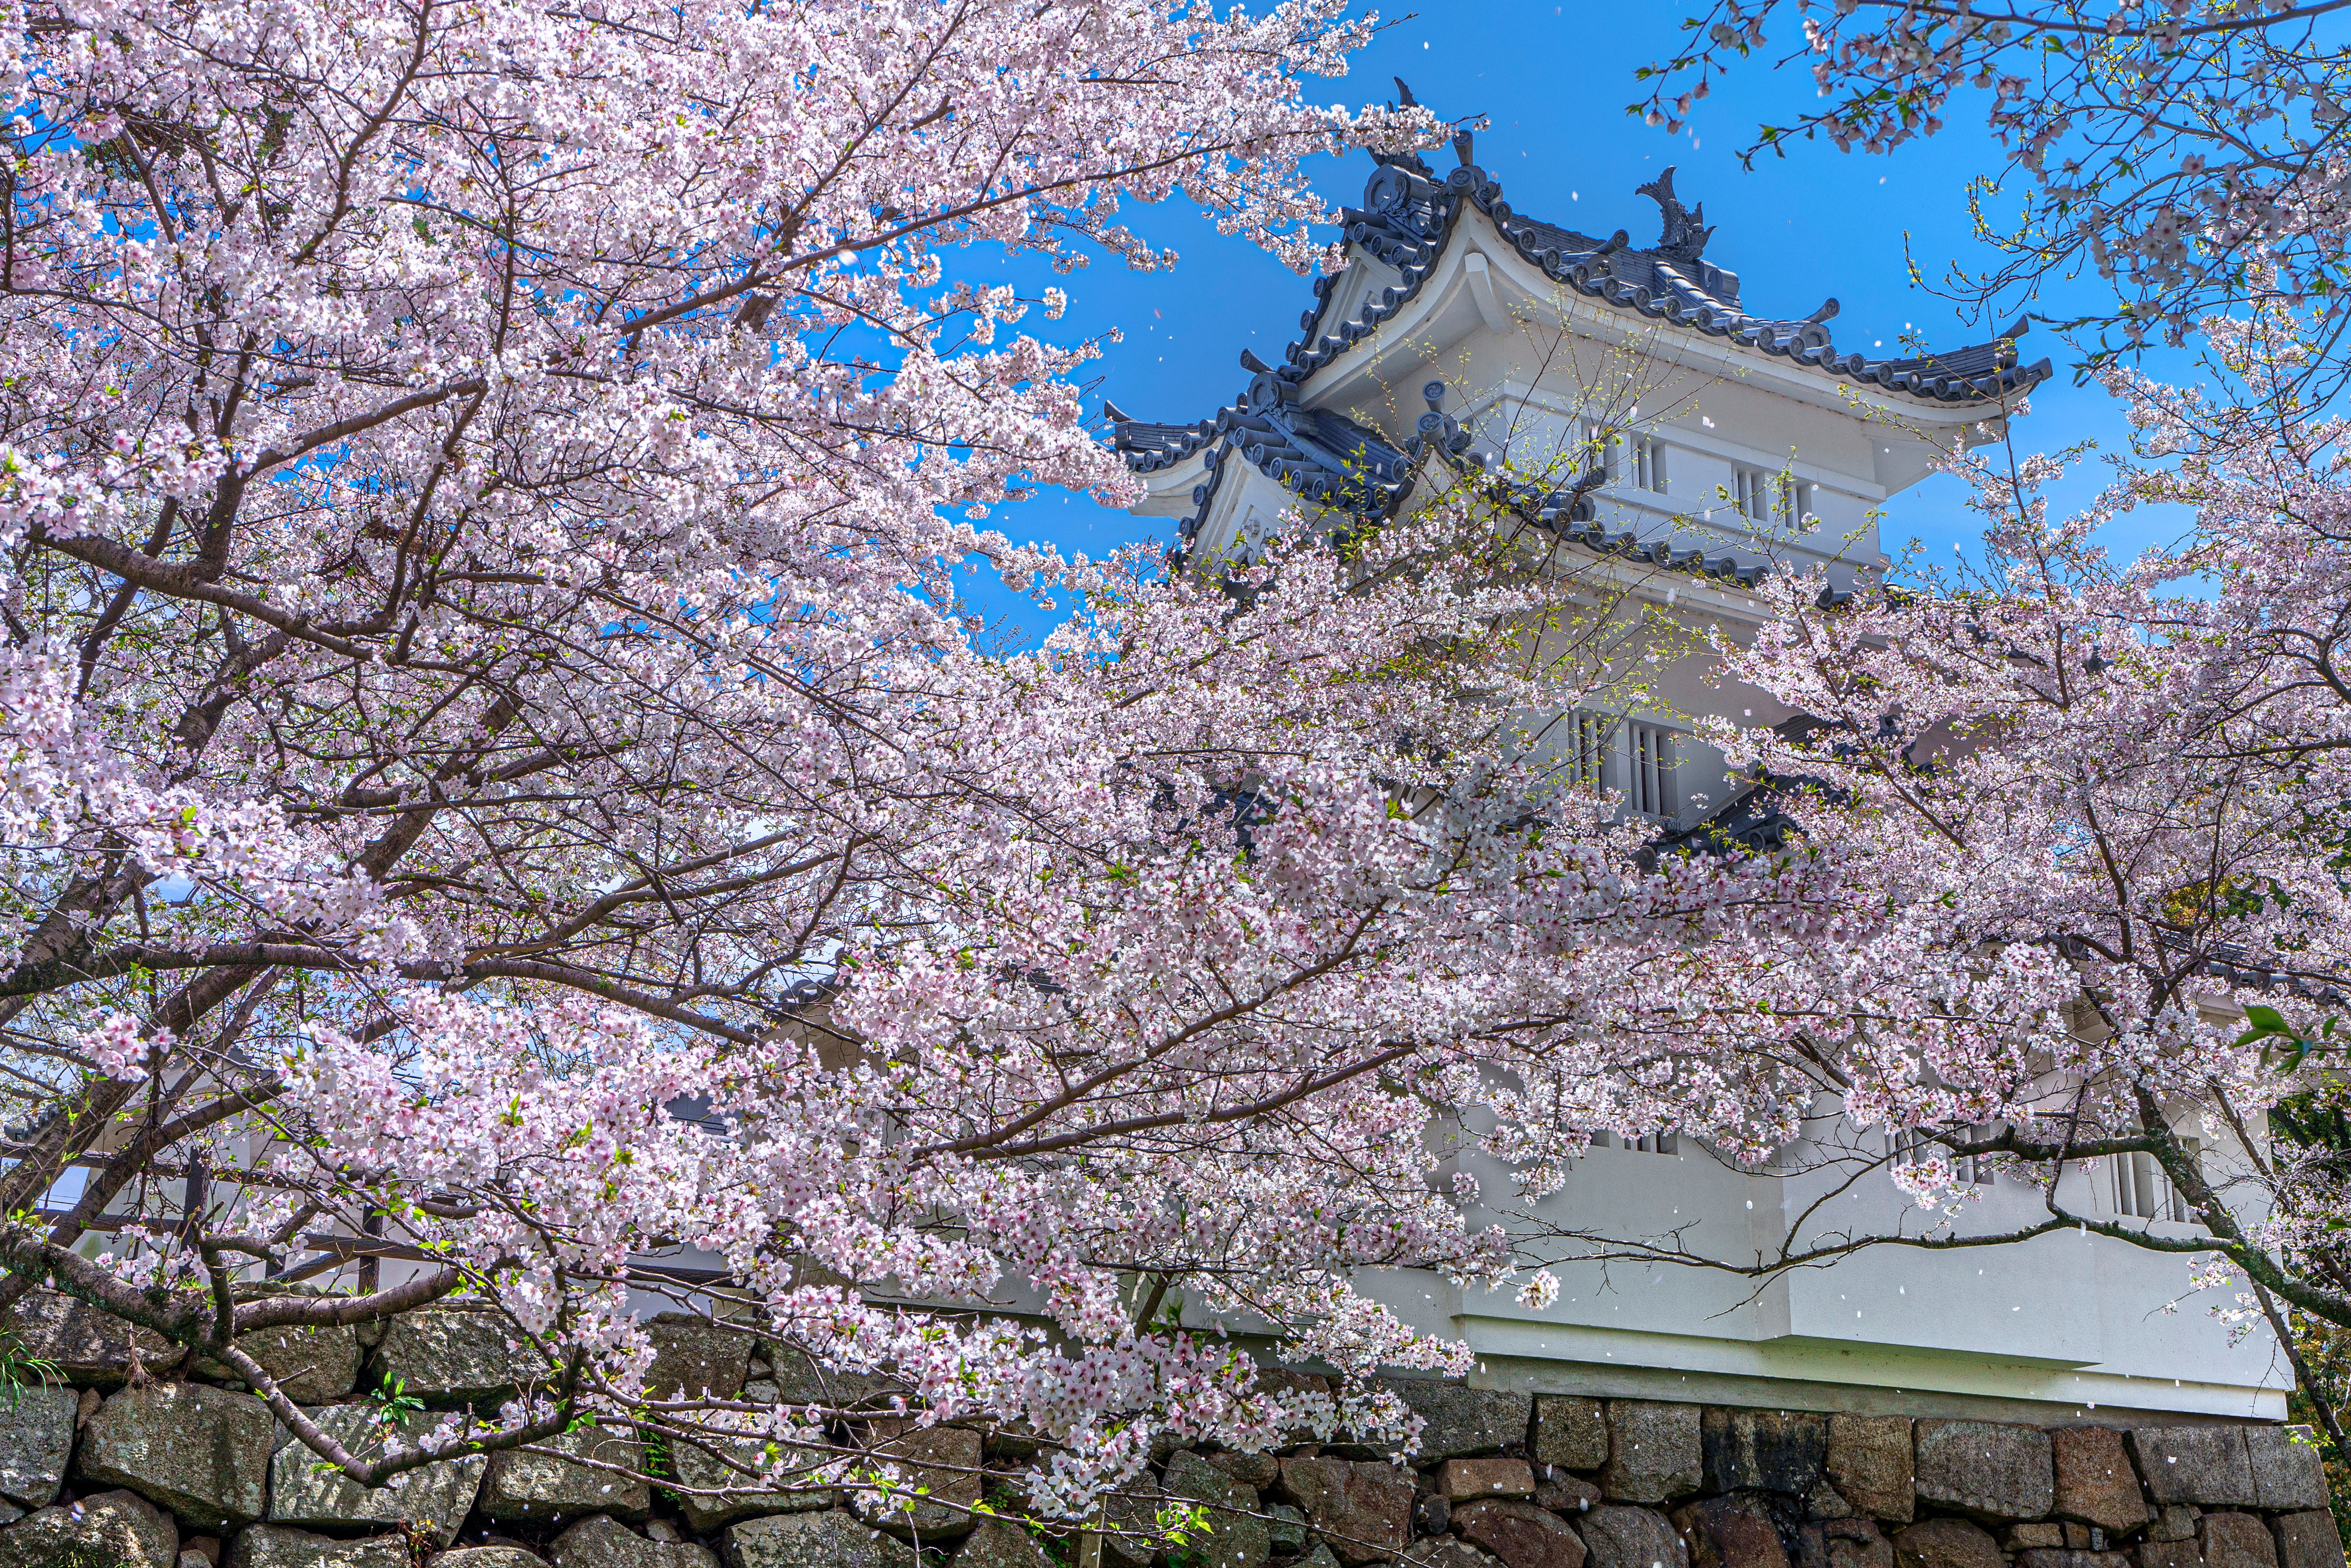 津城 お城公園 の写真 桜吹雪 三重の風景写真なら三重フォトギャラリー